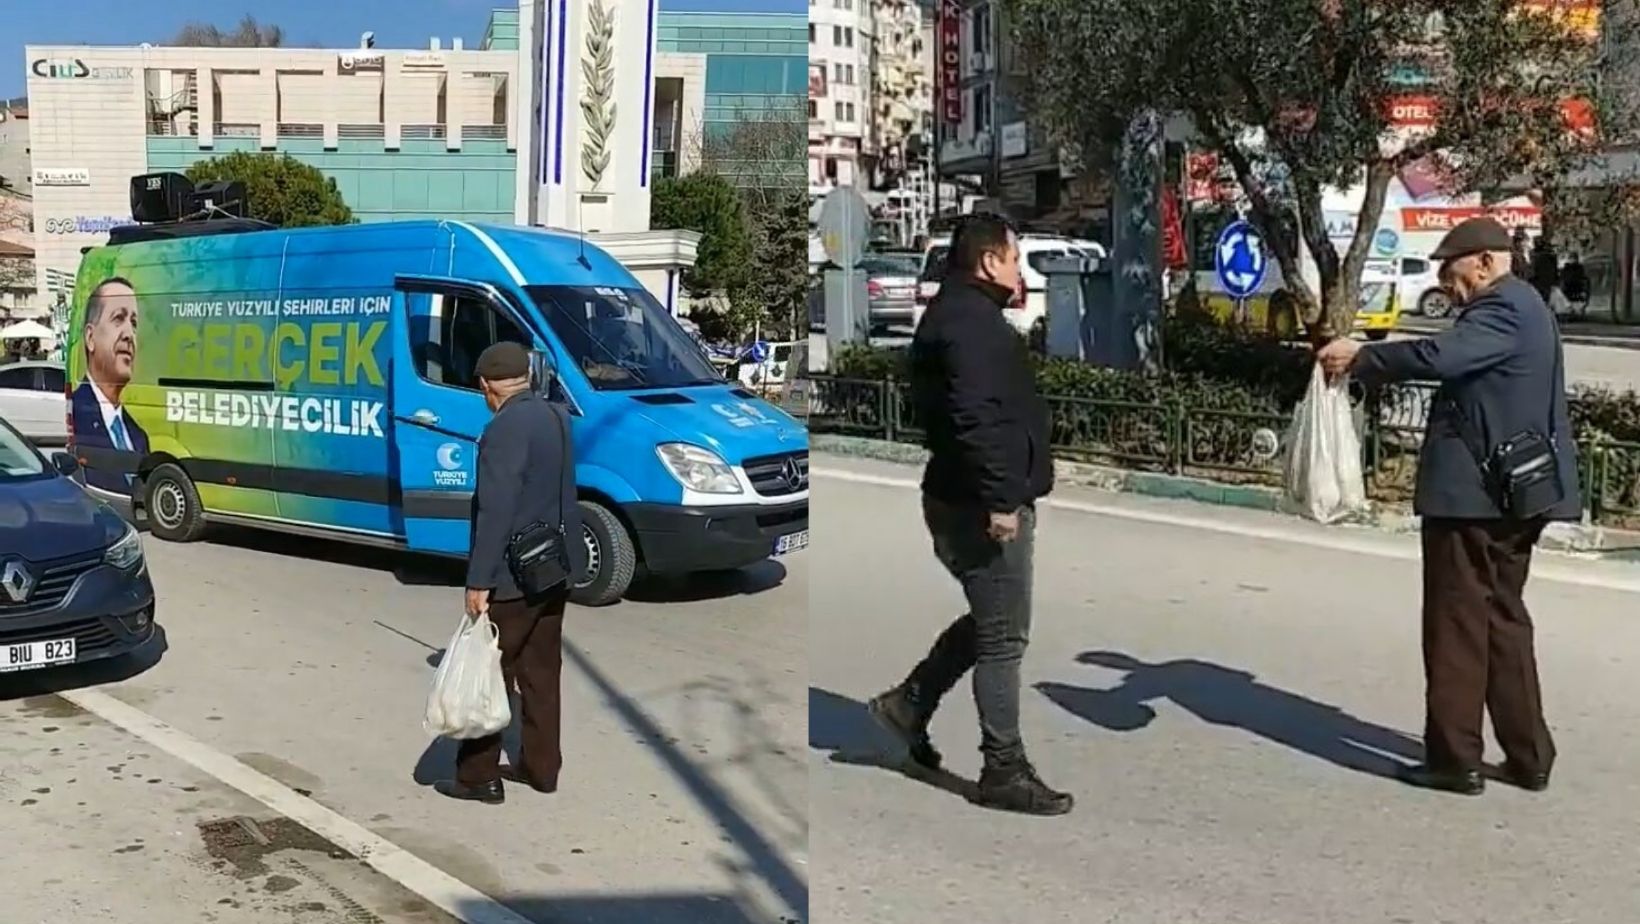 Yaşlı vatandaş, AKP'nin seçim aracı önünde pahalılığa isyan etti: Şuraya bak şuraya! 200 lira burası